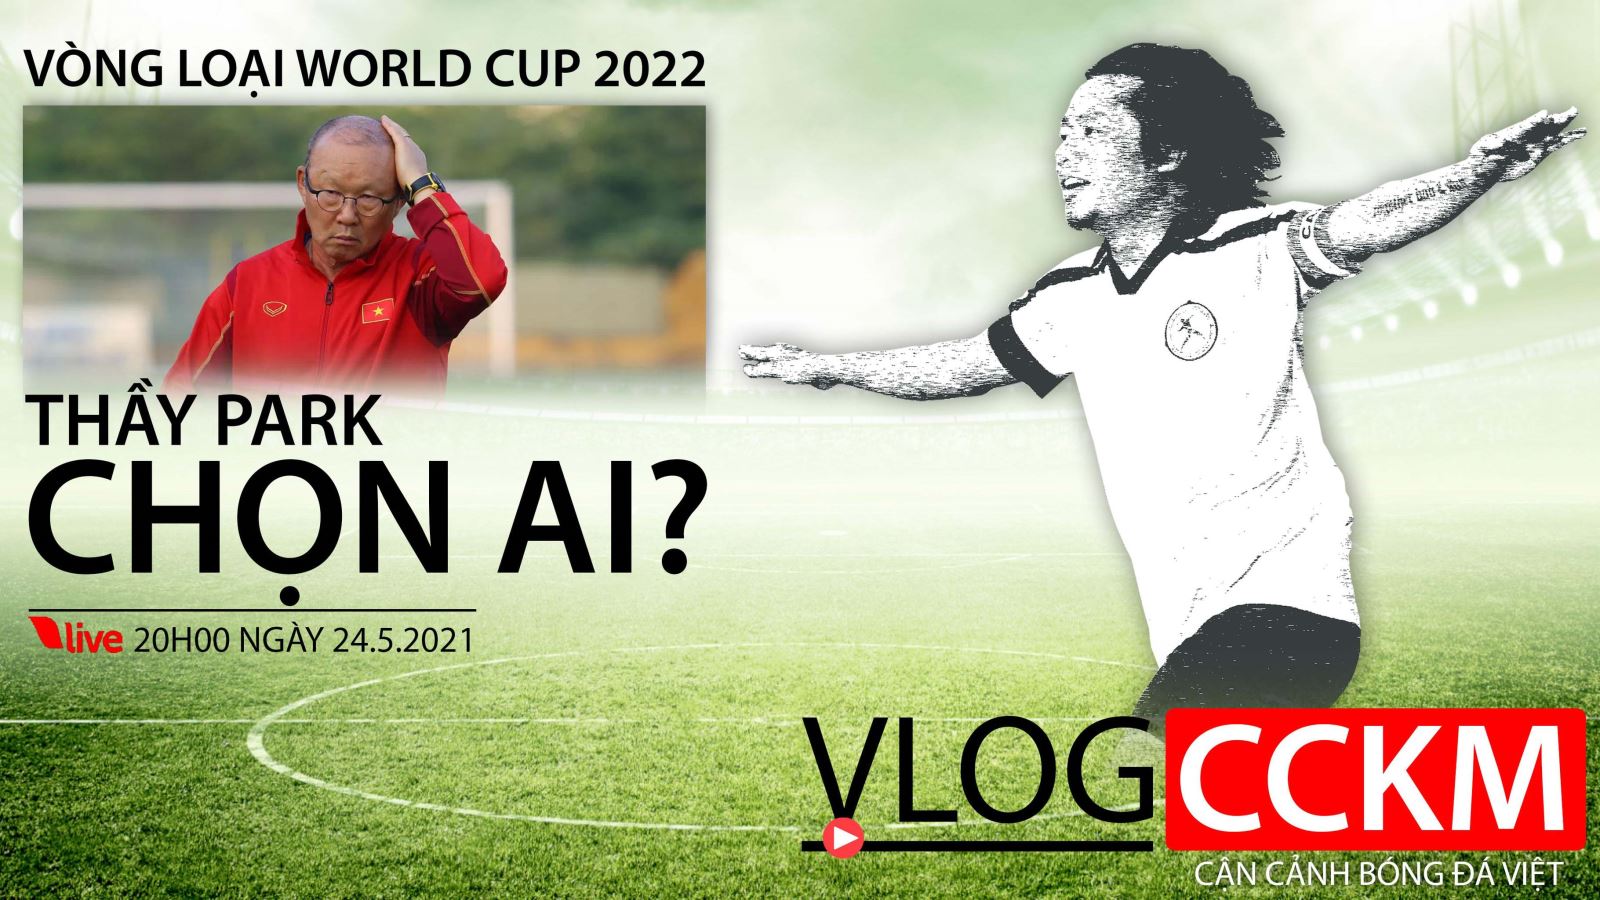 Đội tuyển Việt Nam: Ông Park chọn ai cho vòng loại World Cup 2022?